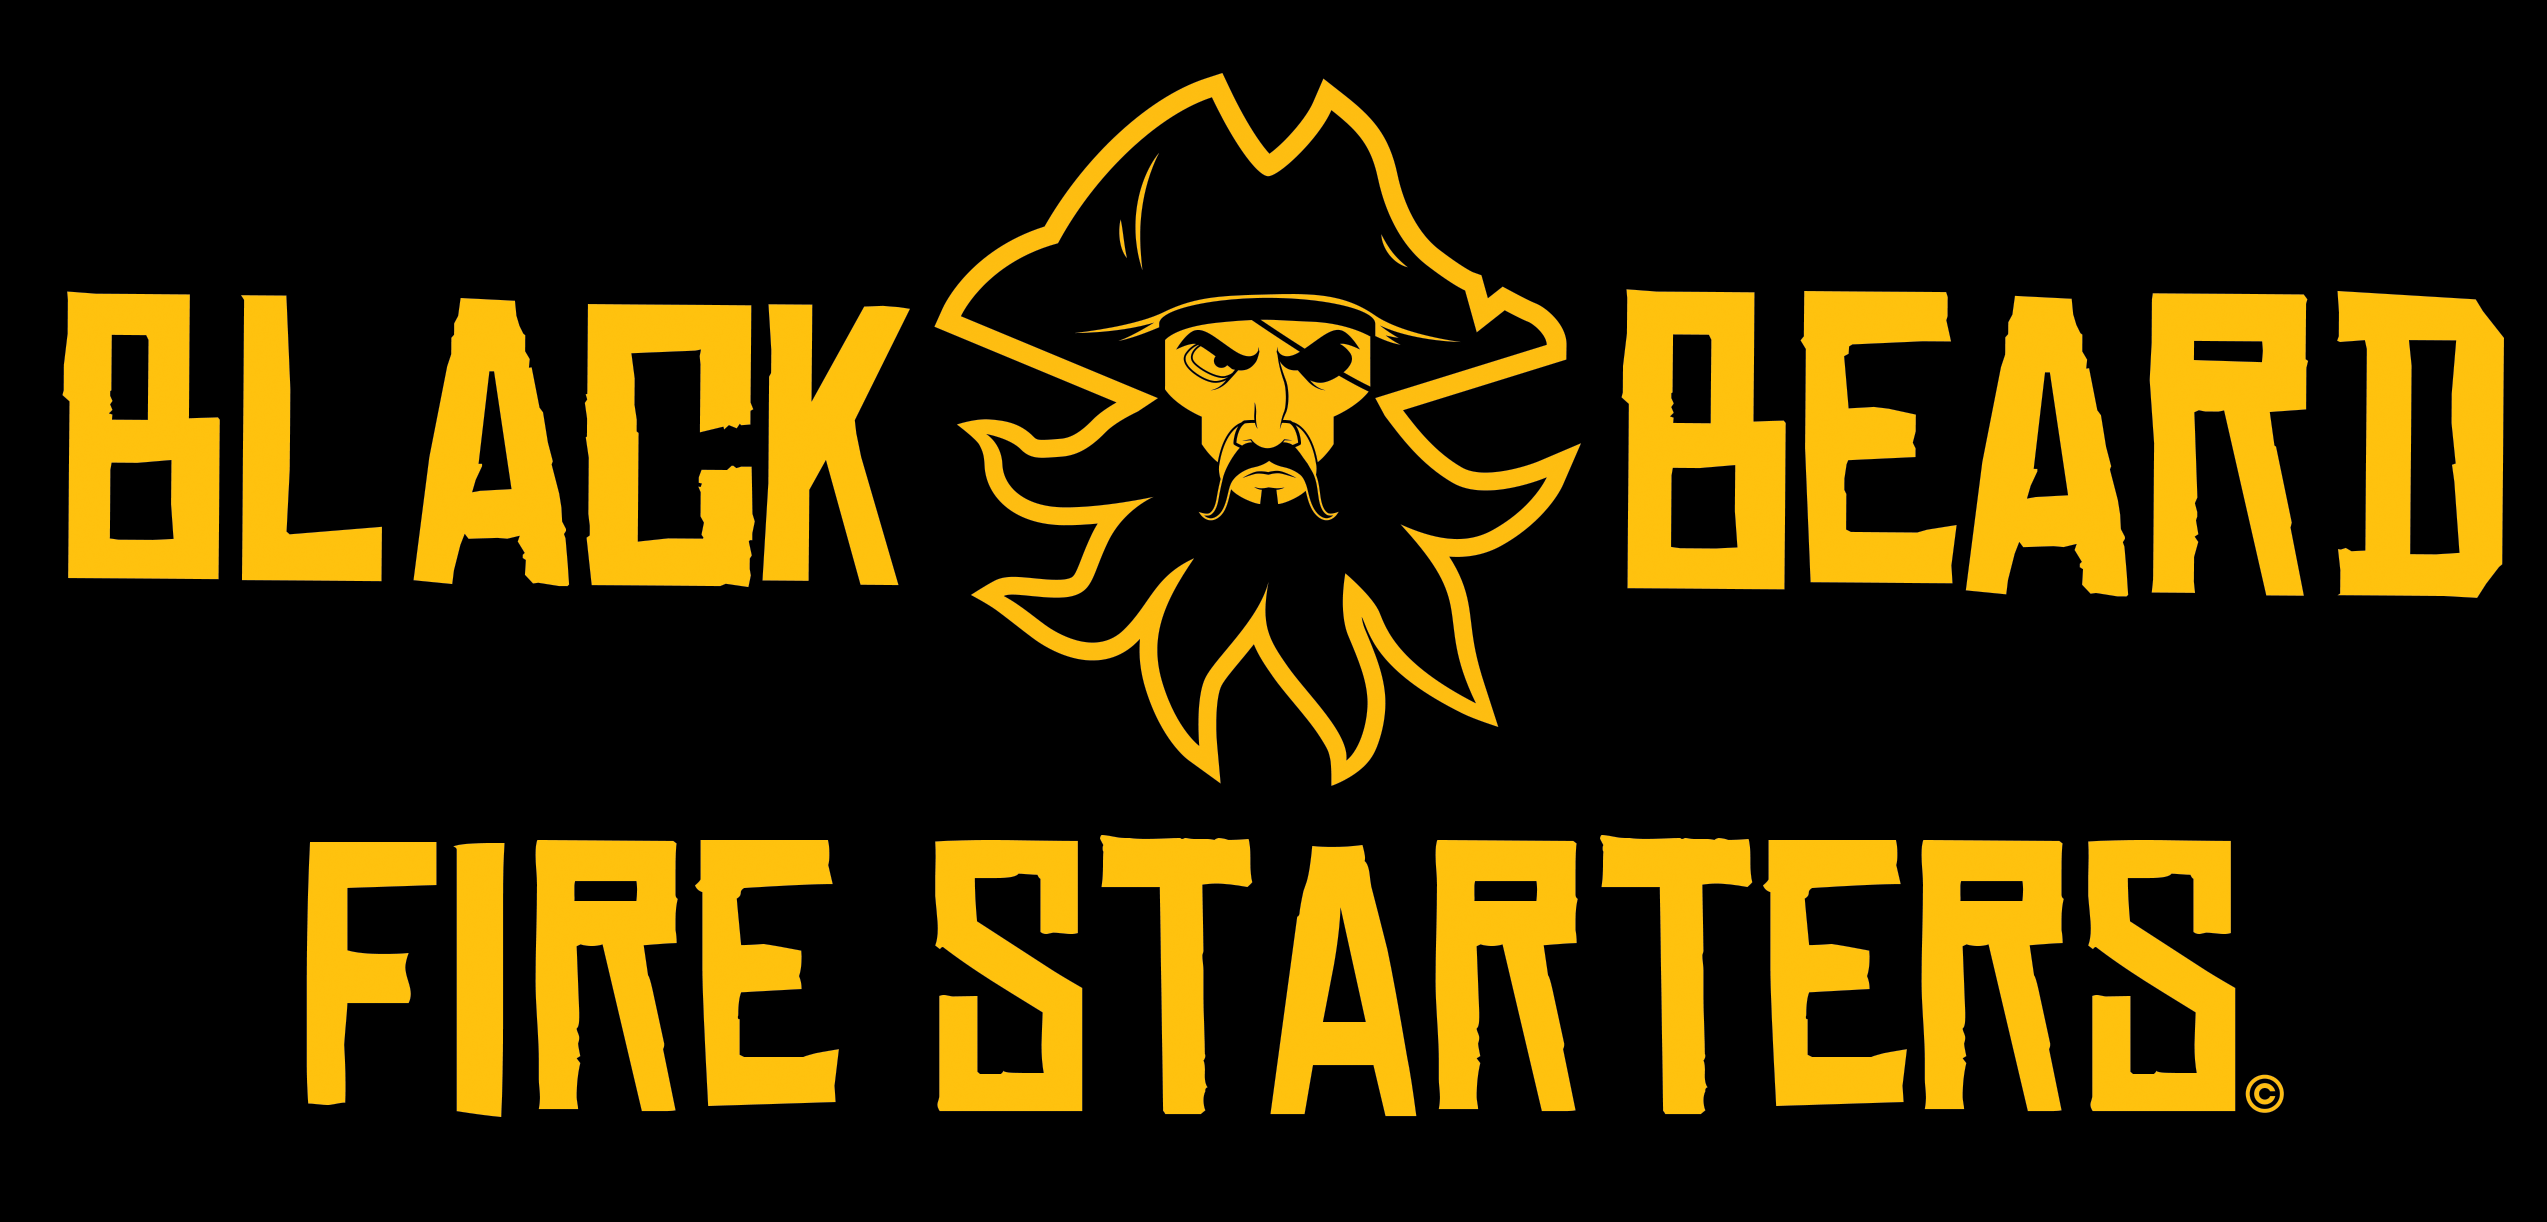 Black Beard Fire Starters Logo